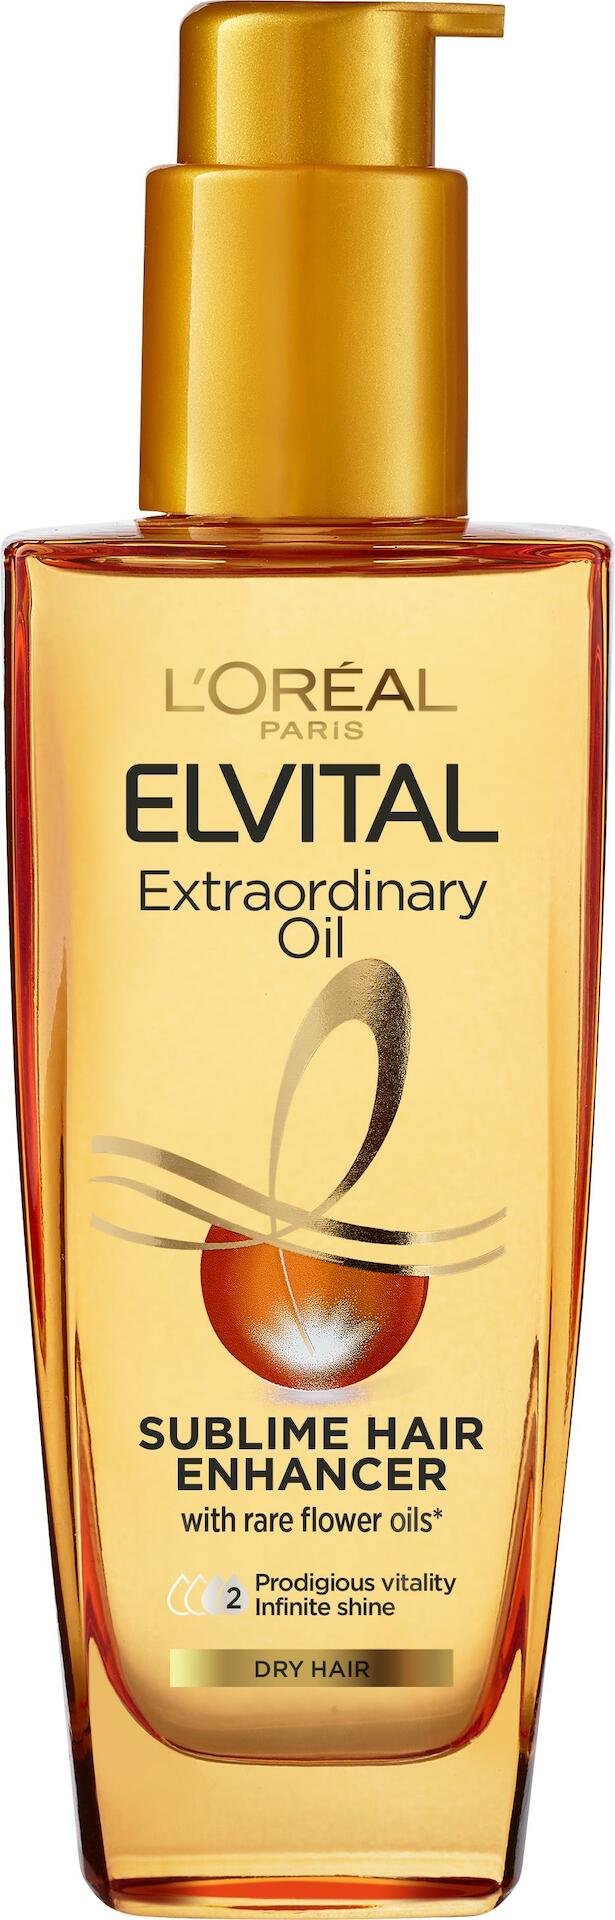 L'Oréal Paris Elvital Extraordinary Oil Hair Oil 100 ml